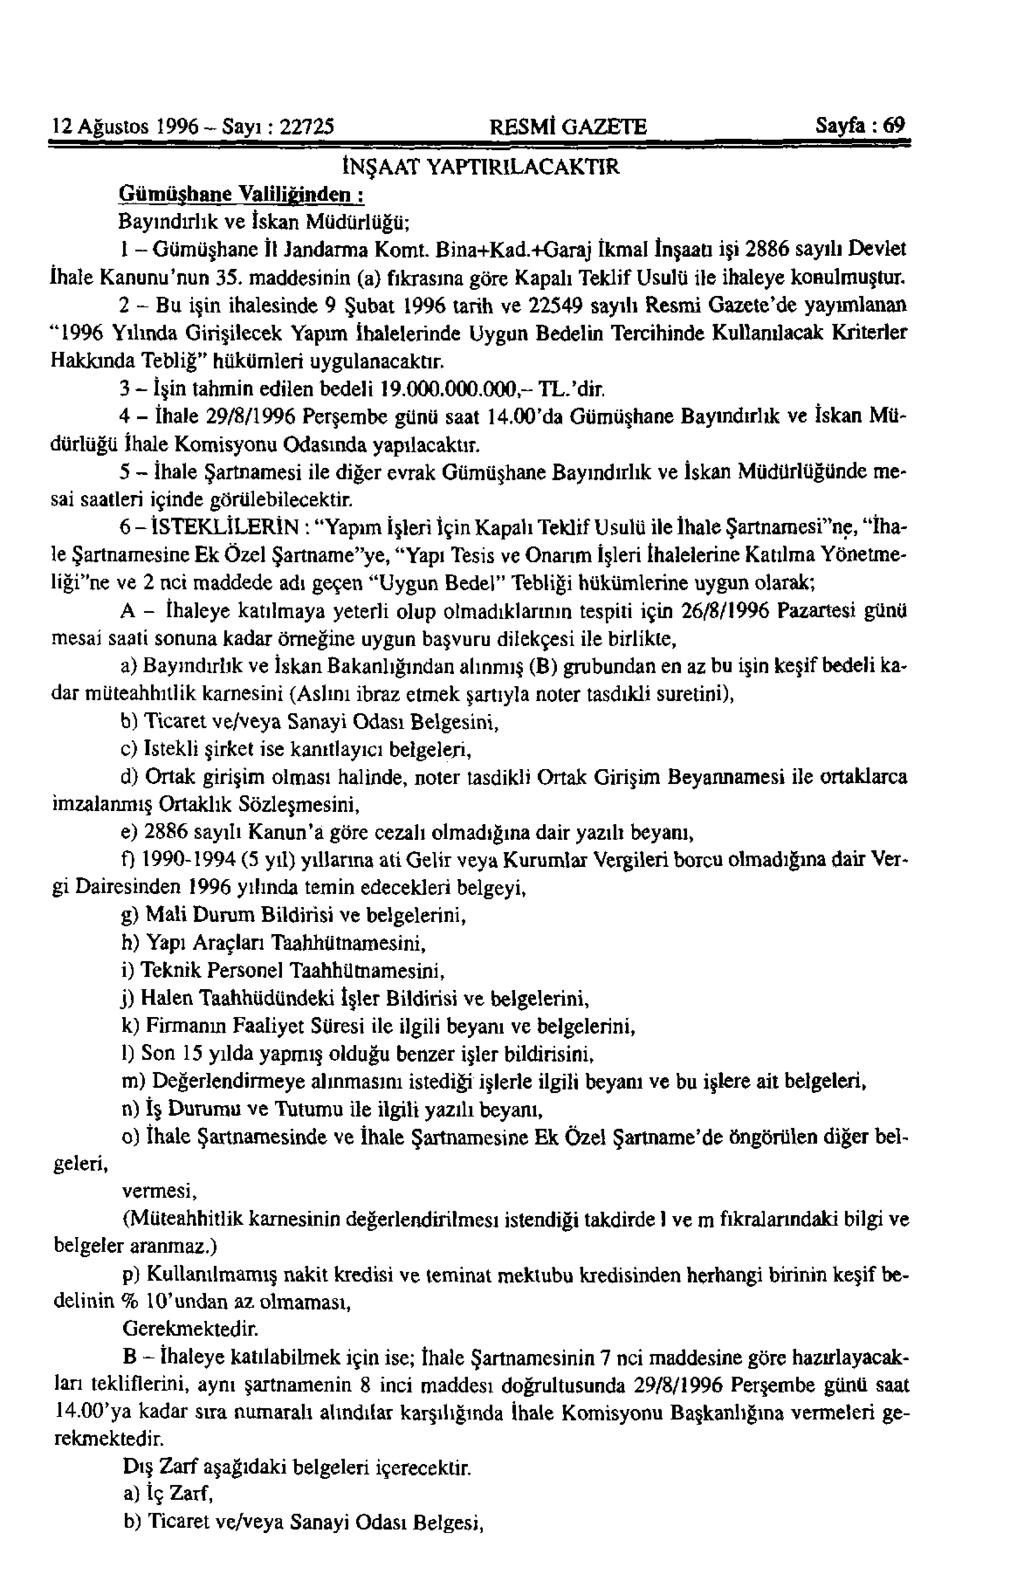 12 Ağustos 1996 - Sayı: 22725 RESMİ GAZETE Sayfa: 69 İNŞAAT YAPTIRILACAKTIR Gümüşhane Valiliğinden : Bayındırlık ve İskan Müdürlüğü; 1 - Gümüşhane İl Jandarma Komt. Bina+Kad.